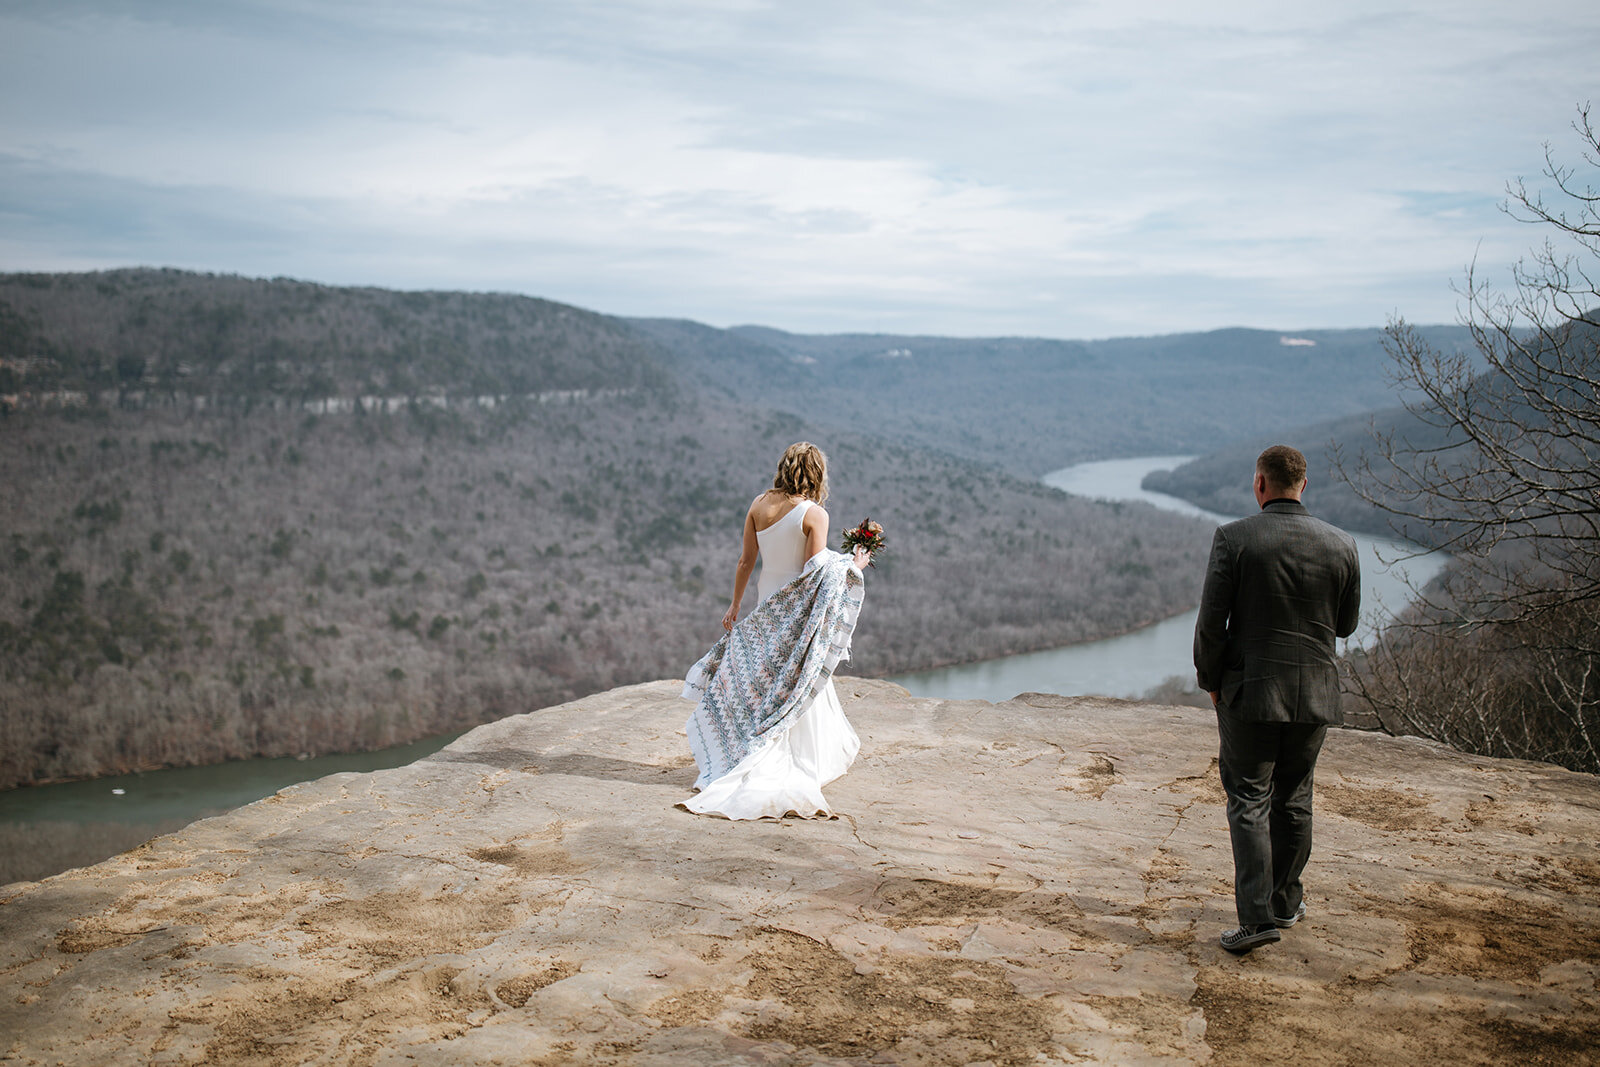 snoopers-rock-adventure-elopement-chattanooga-wedding-photographerfoster-falls-elopement-chattanooga-wedding-photographer-530_websize.jpg